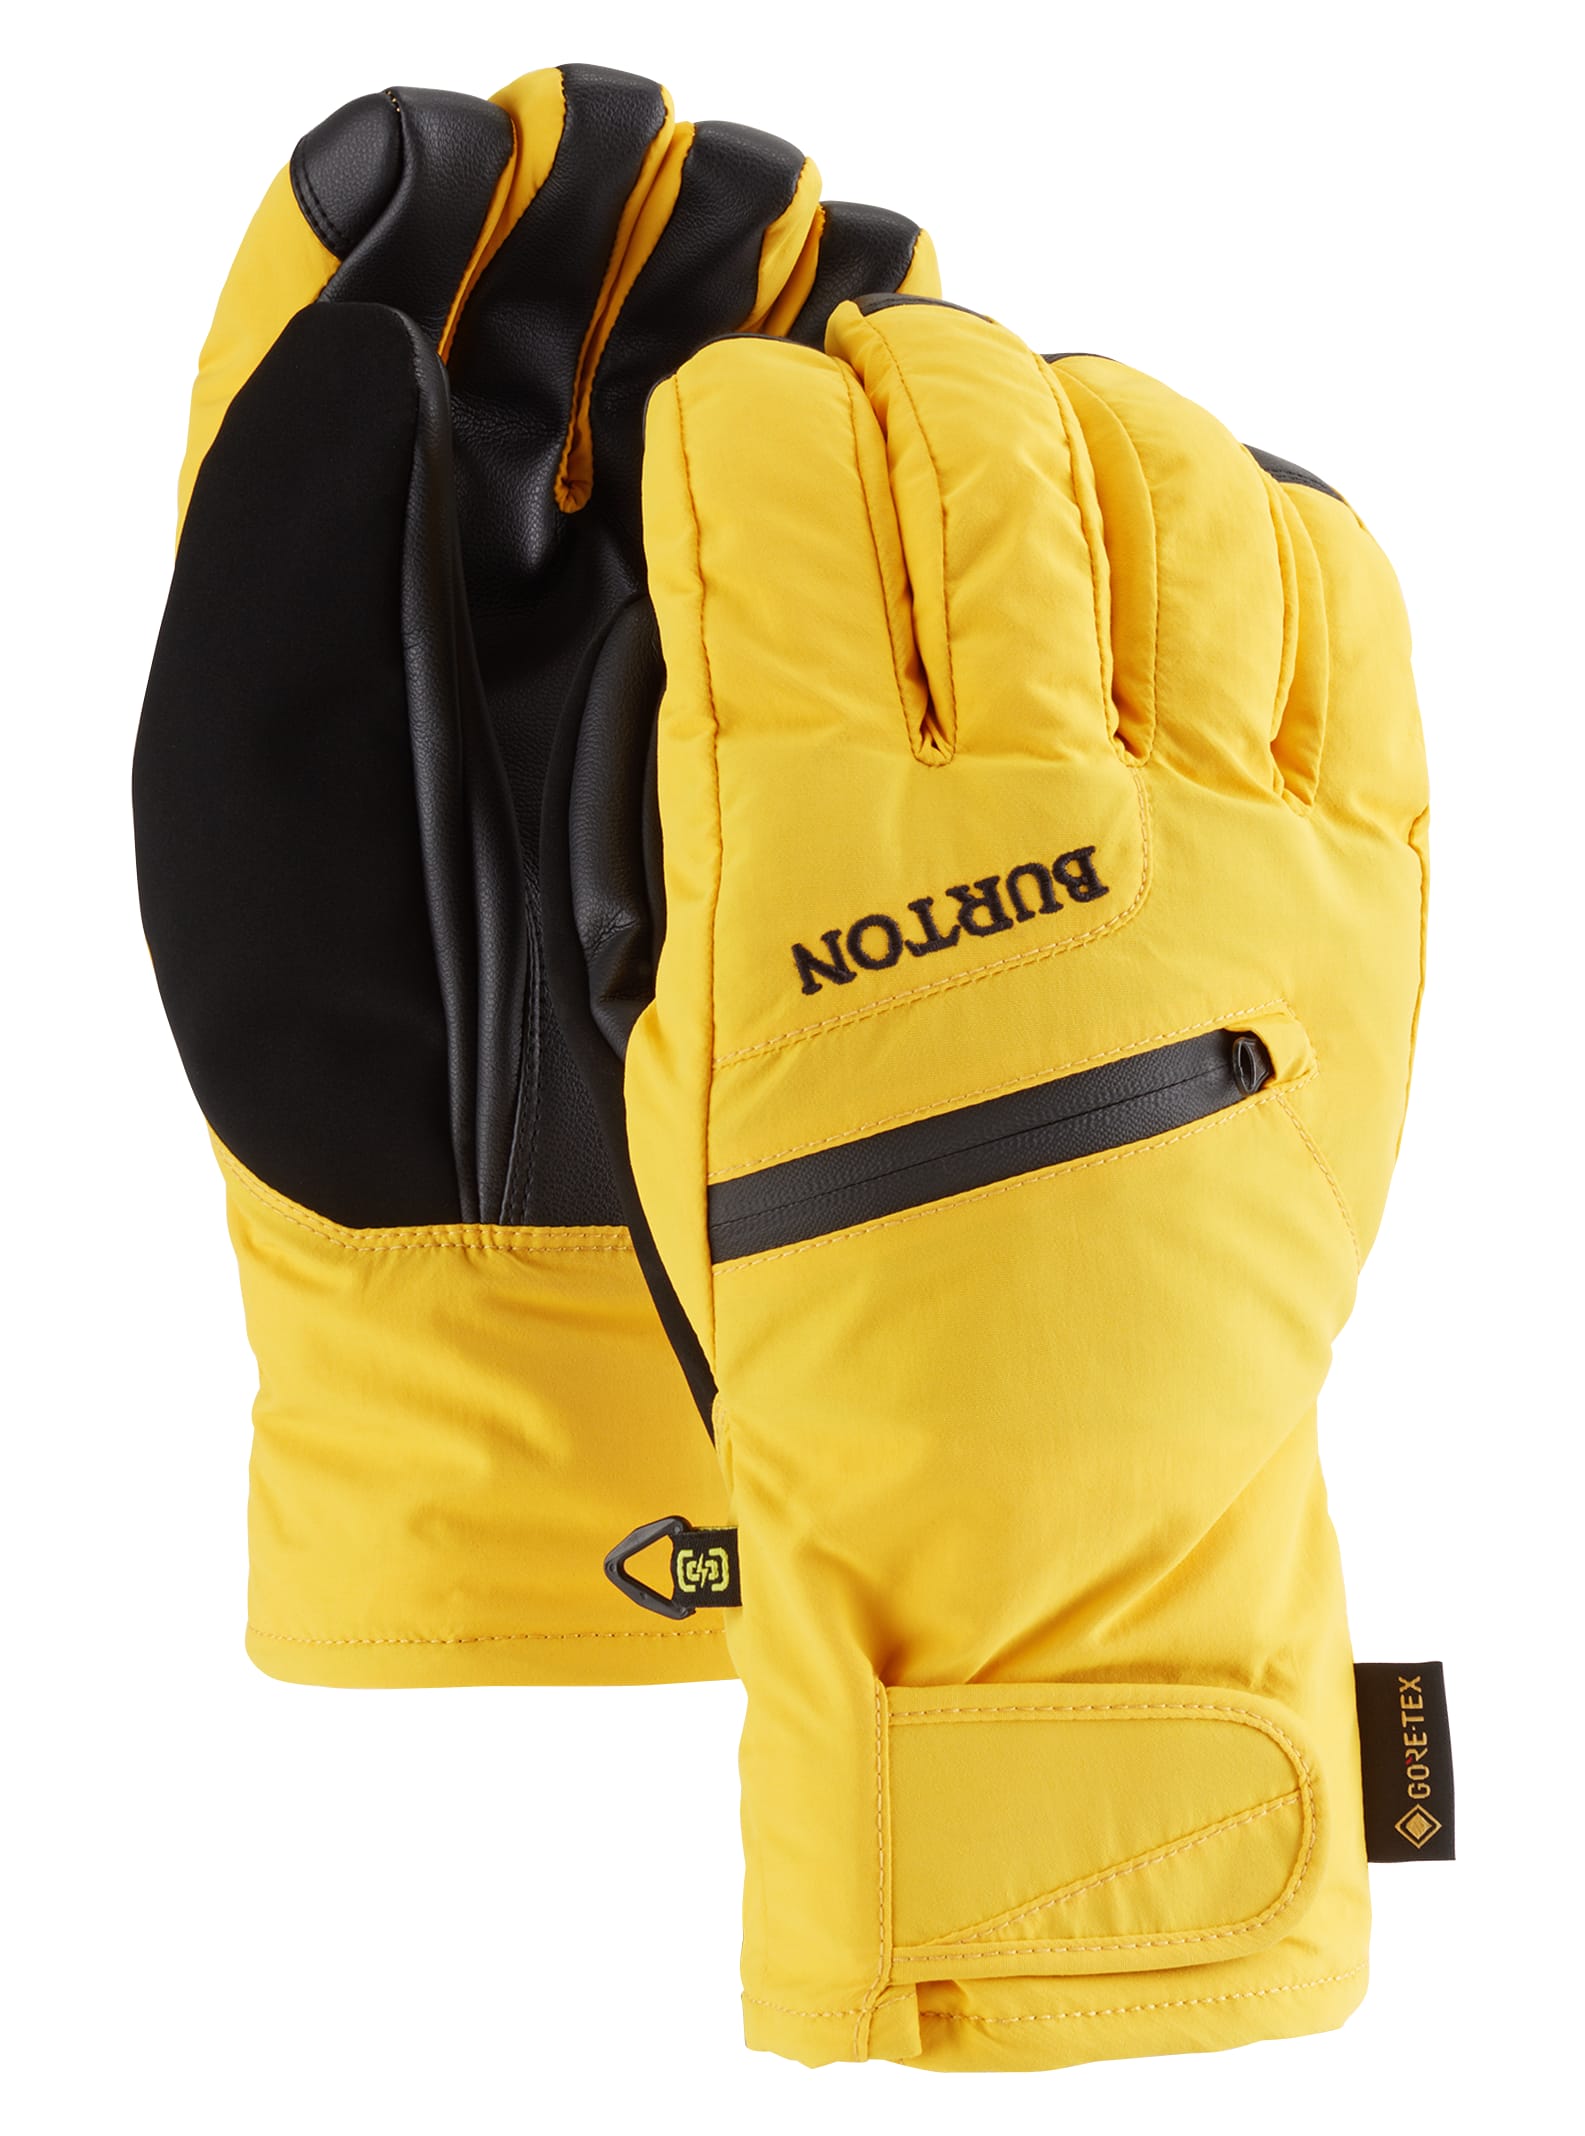 Men's Gloves & Mittens | Burton Snowboards CH